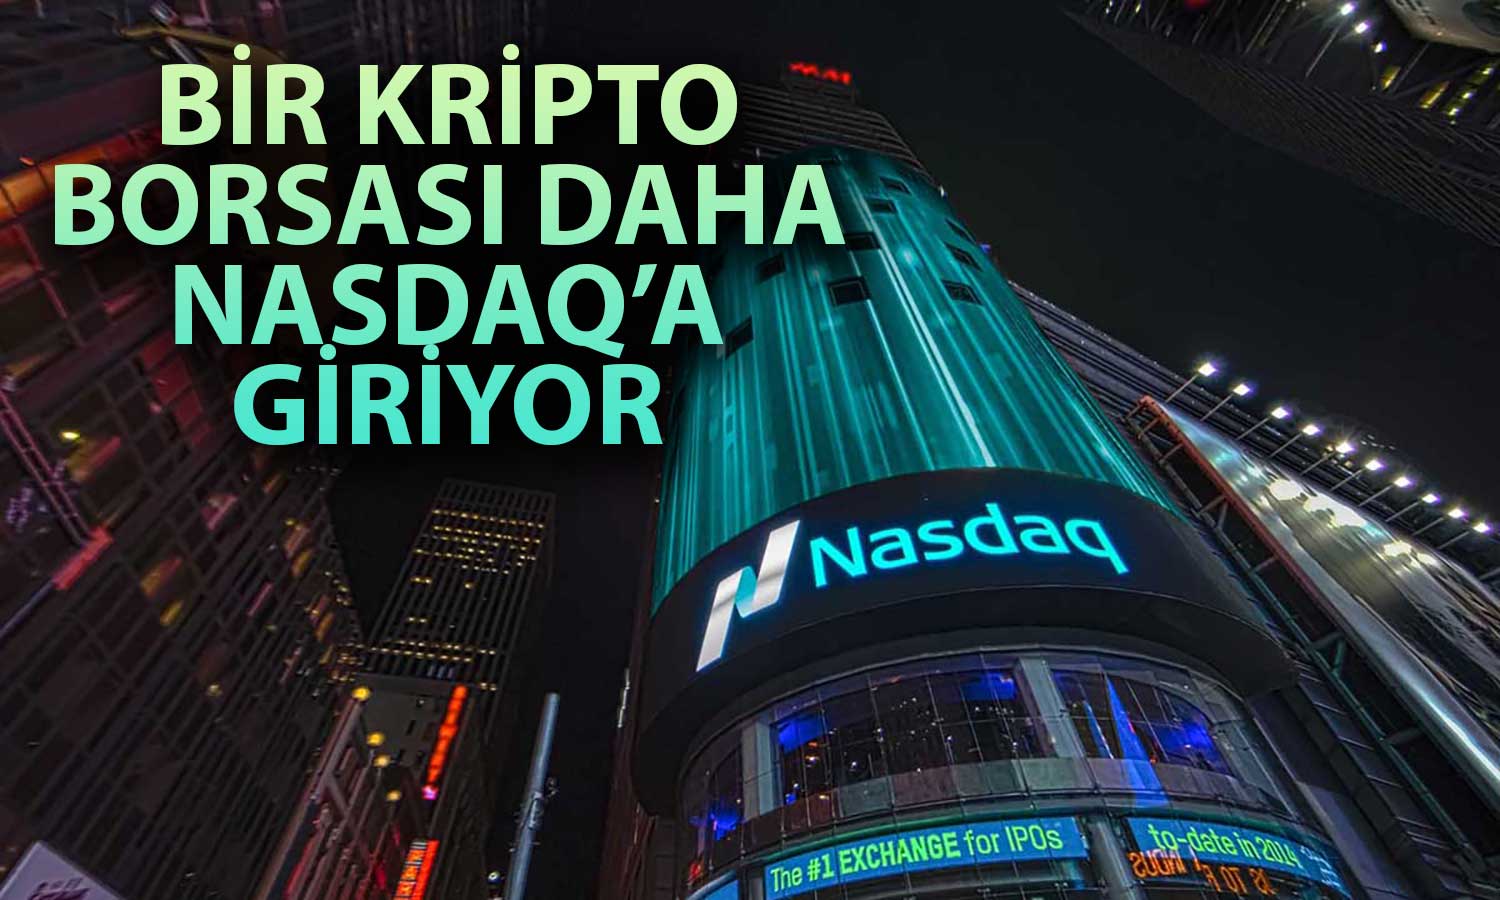 Japon Kripto Borsası Nasdaq’da Listelenmeye Hazırlanıyor